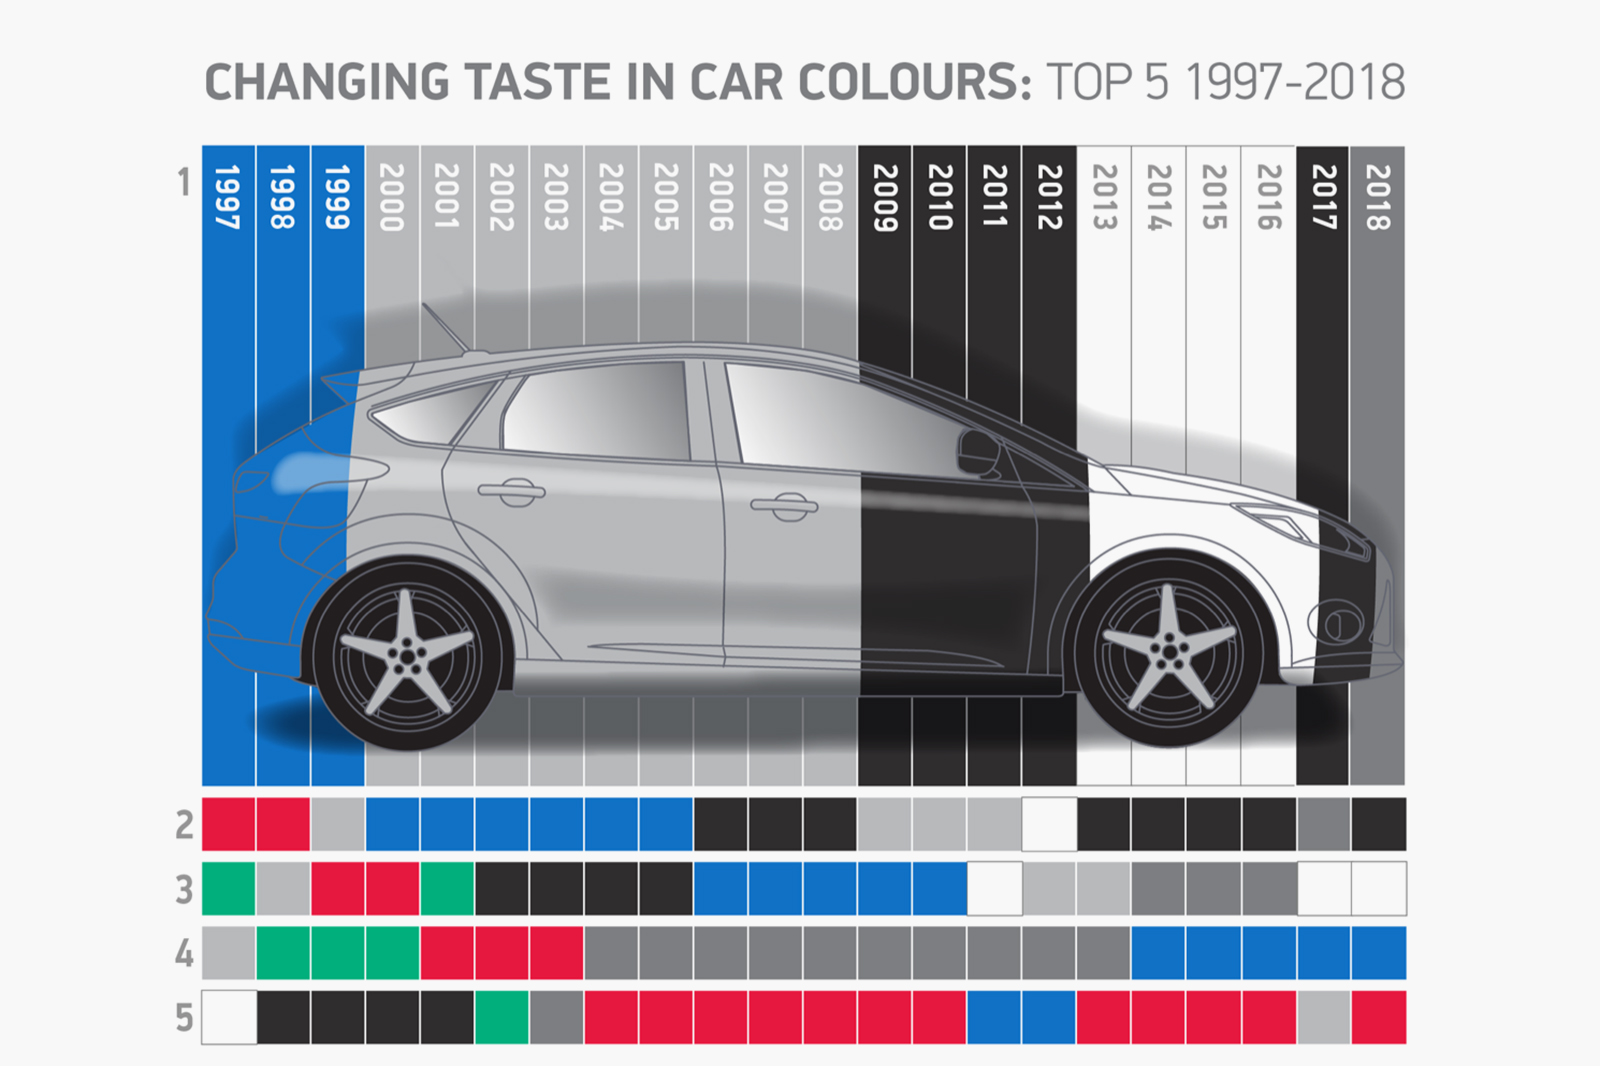 Audi Colour Chart 2018